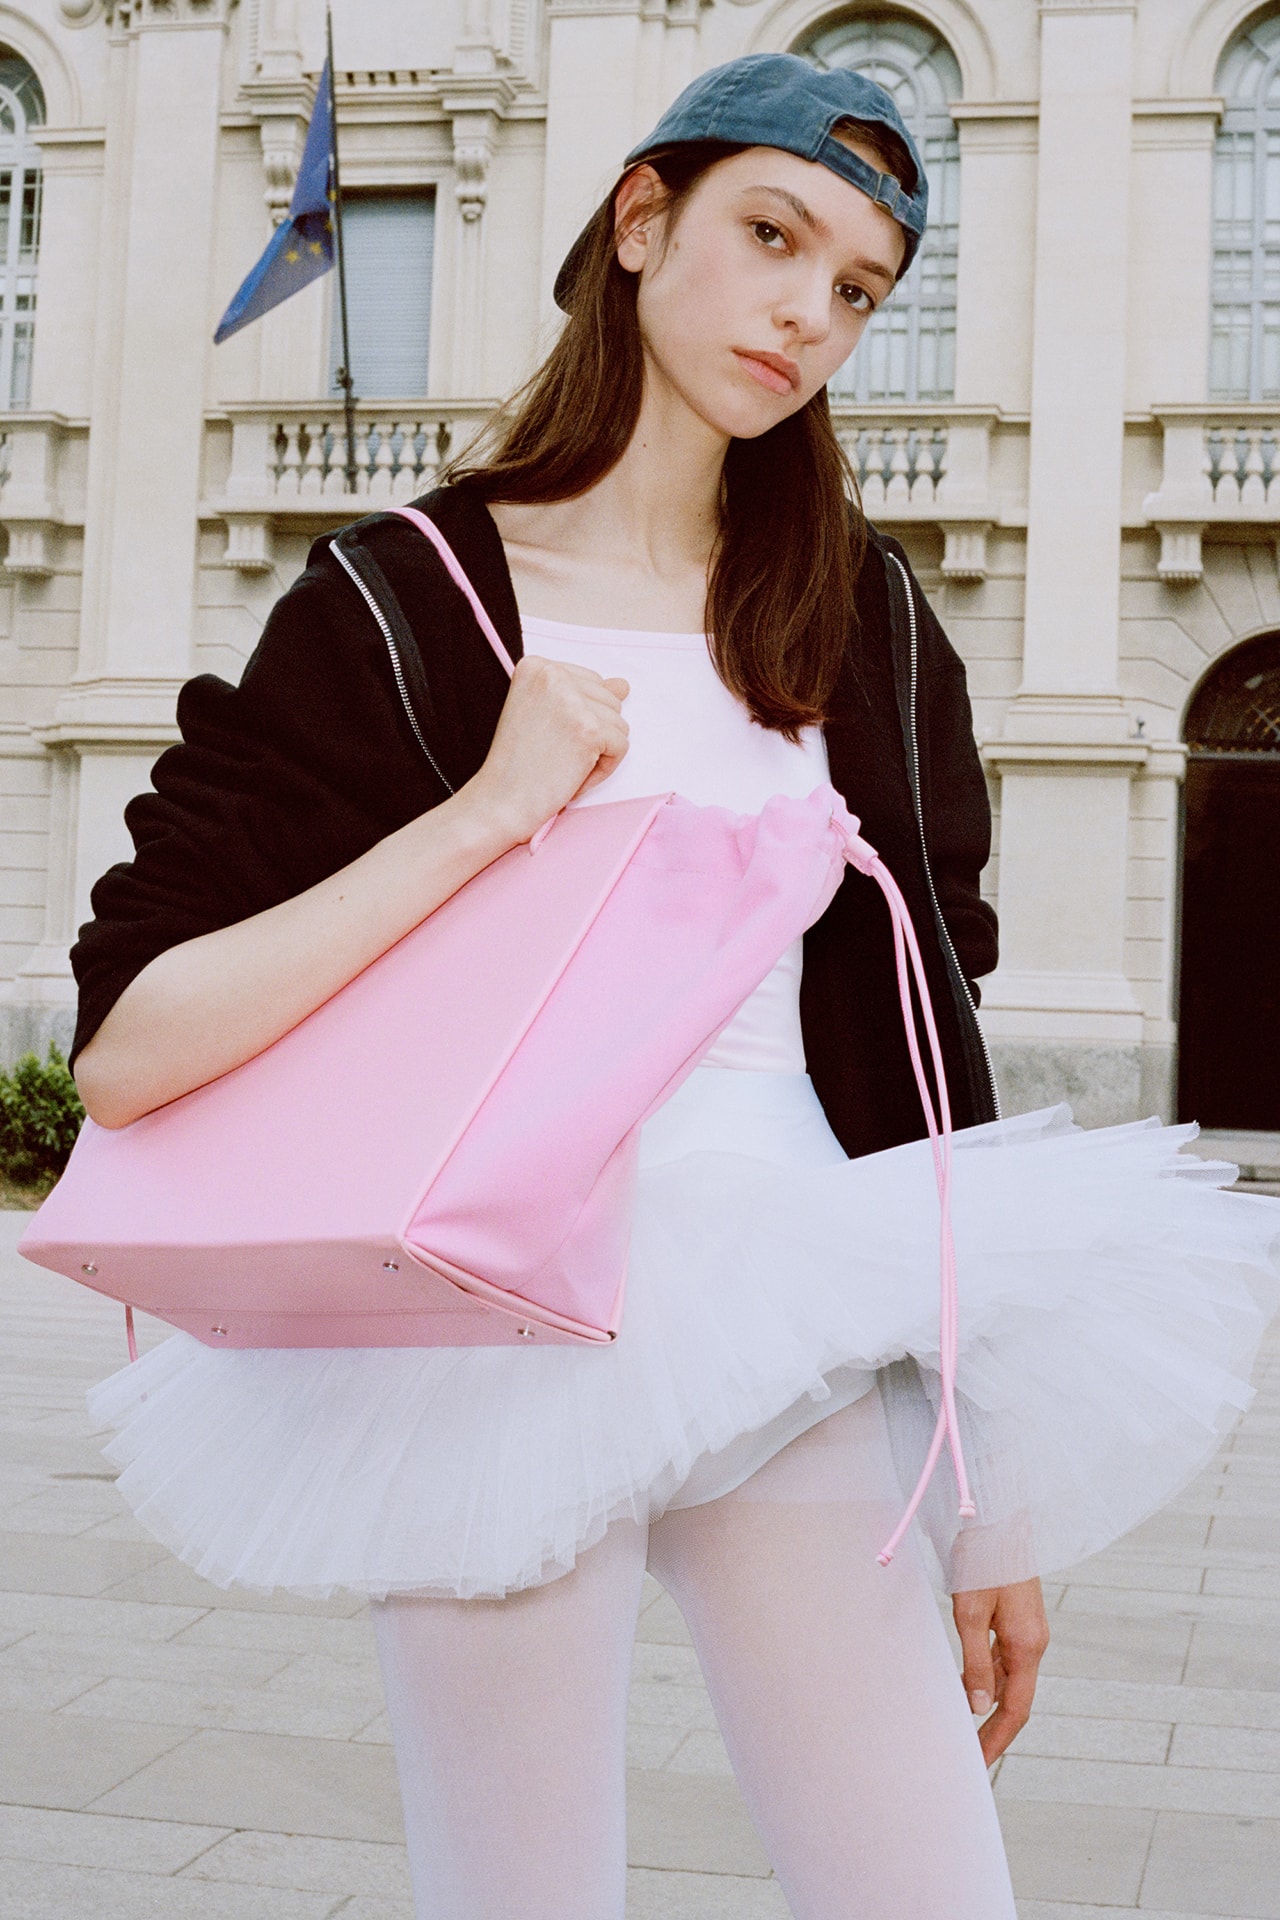 Medea Spring Summer 2022 Handbag Collection Designer Leather Bag Italian Brand Pink Tote Large